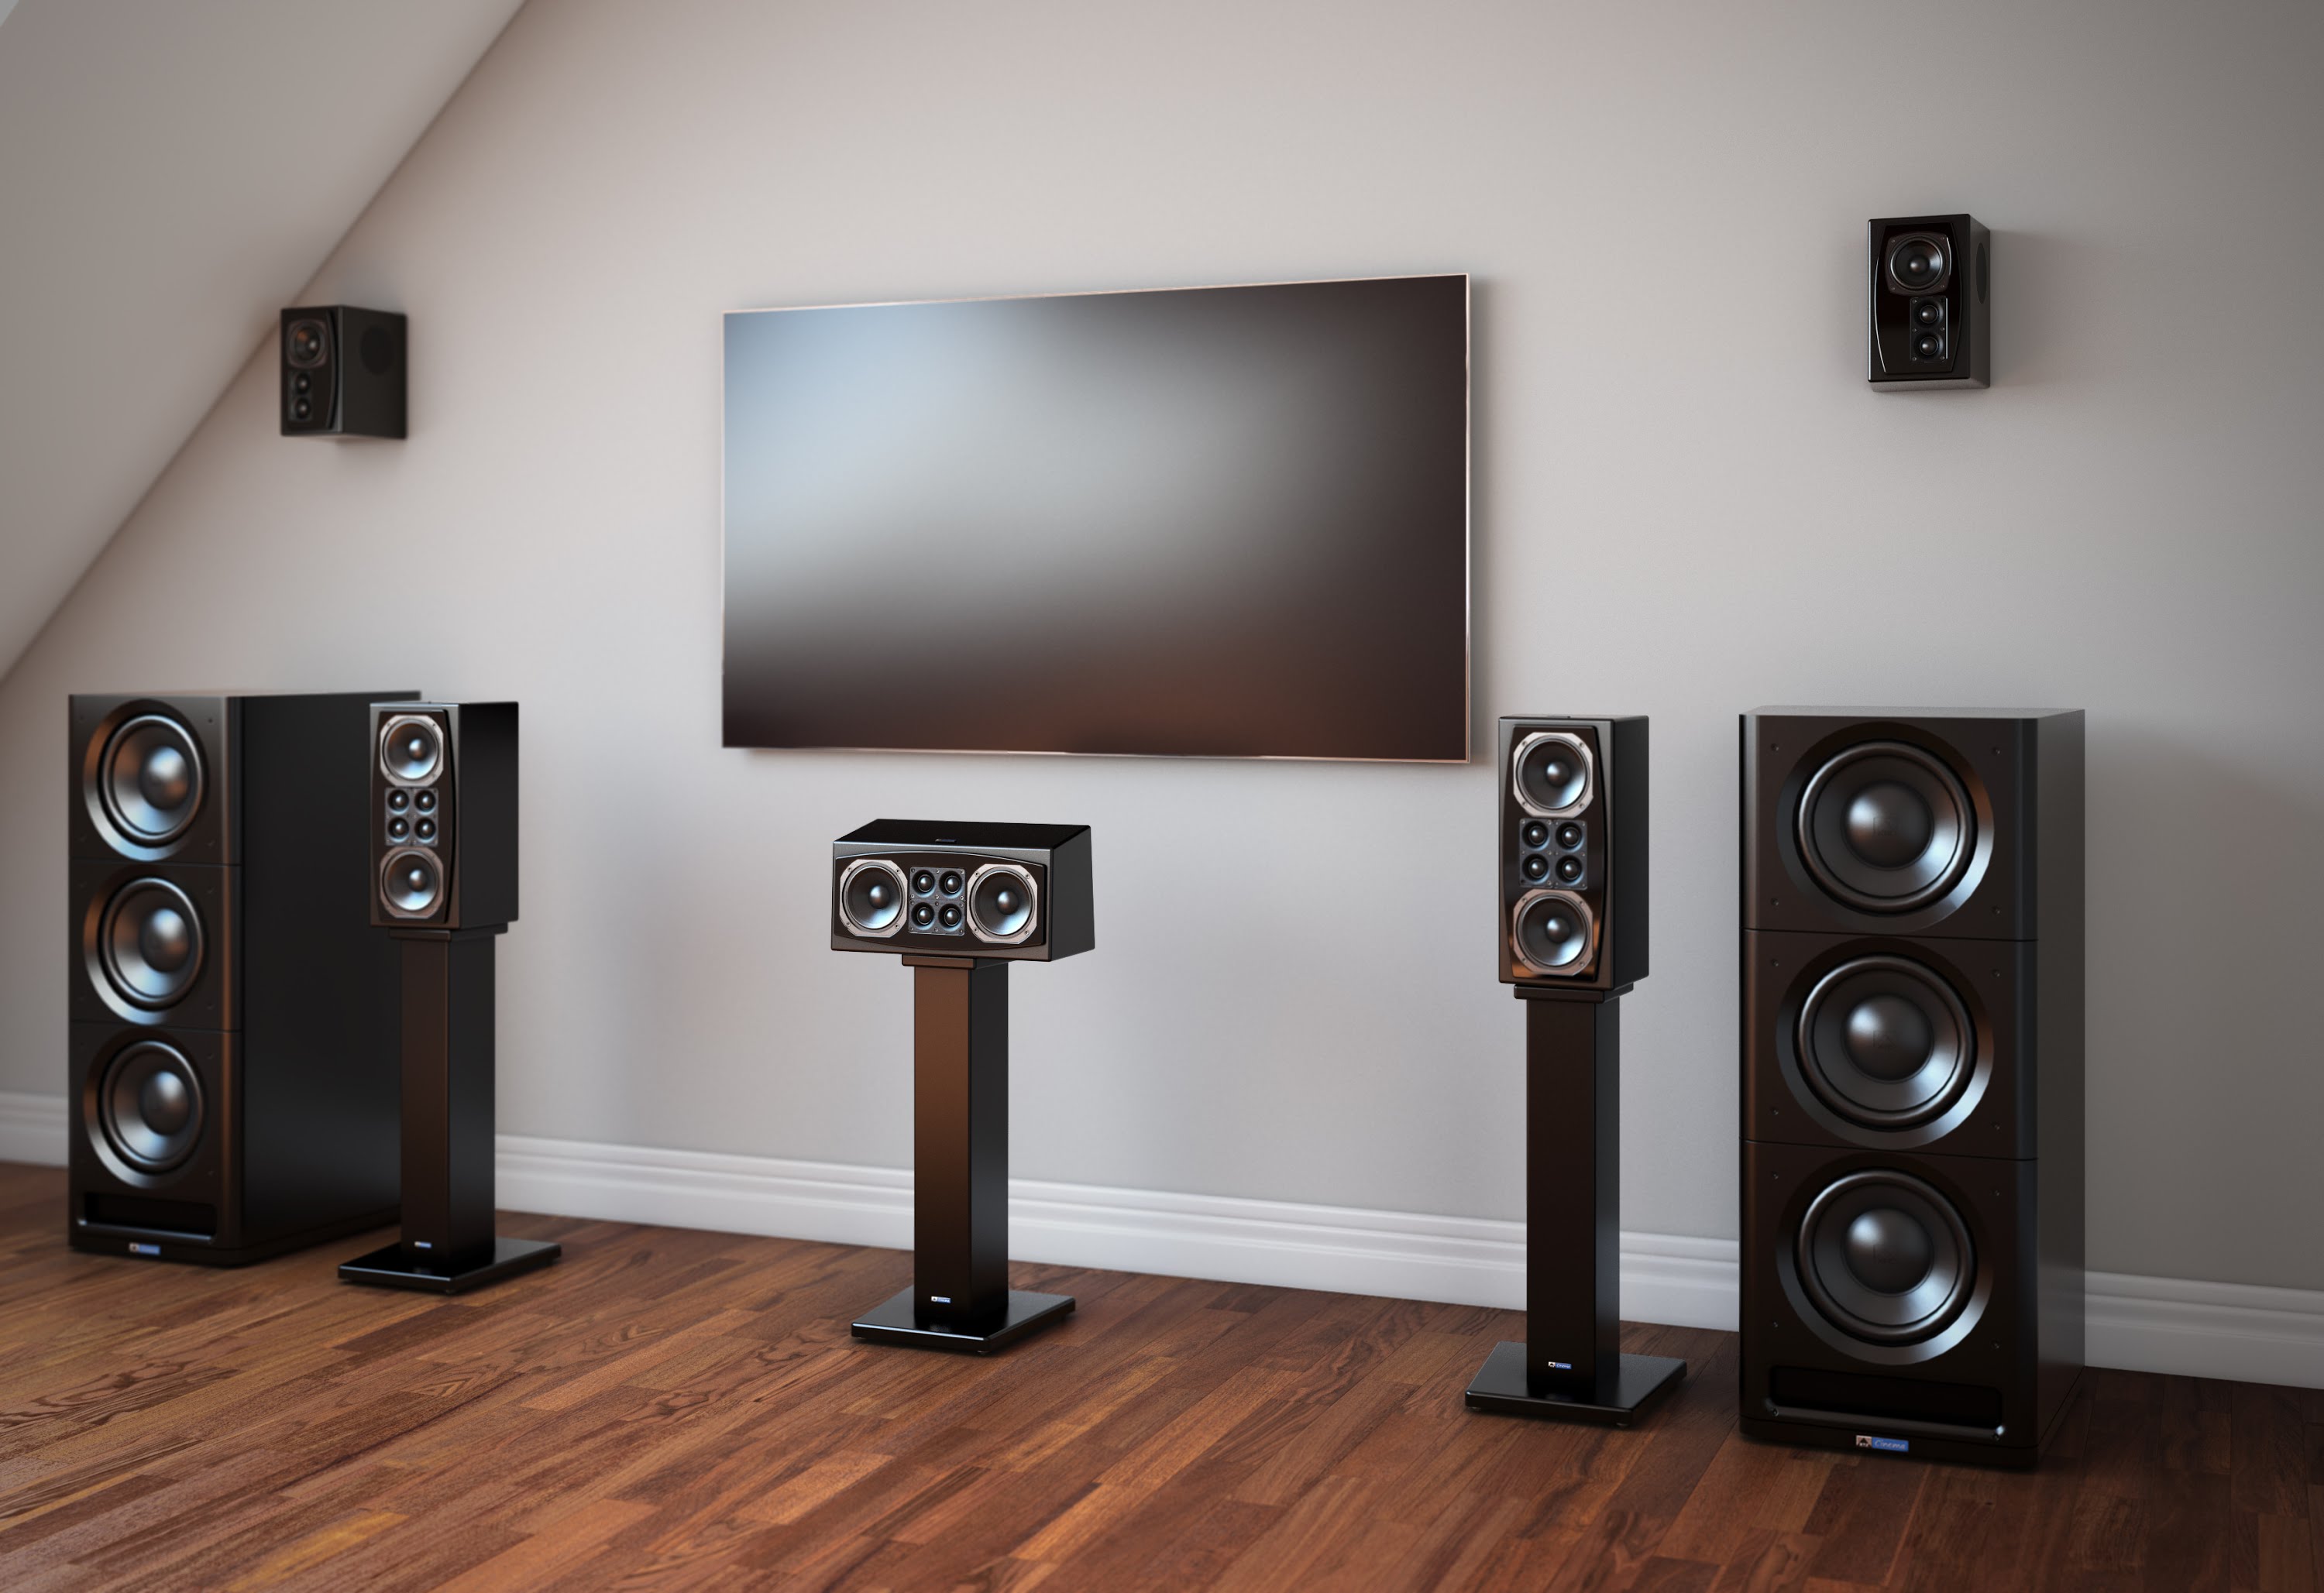 XTZ Cinema Series speakers